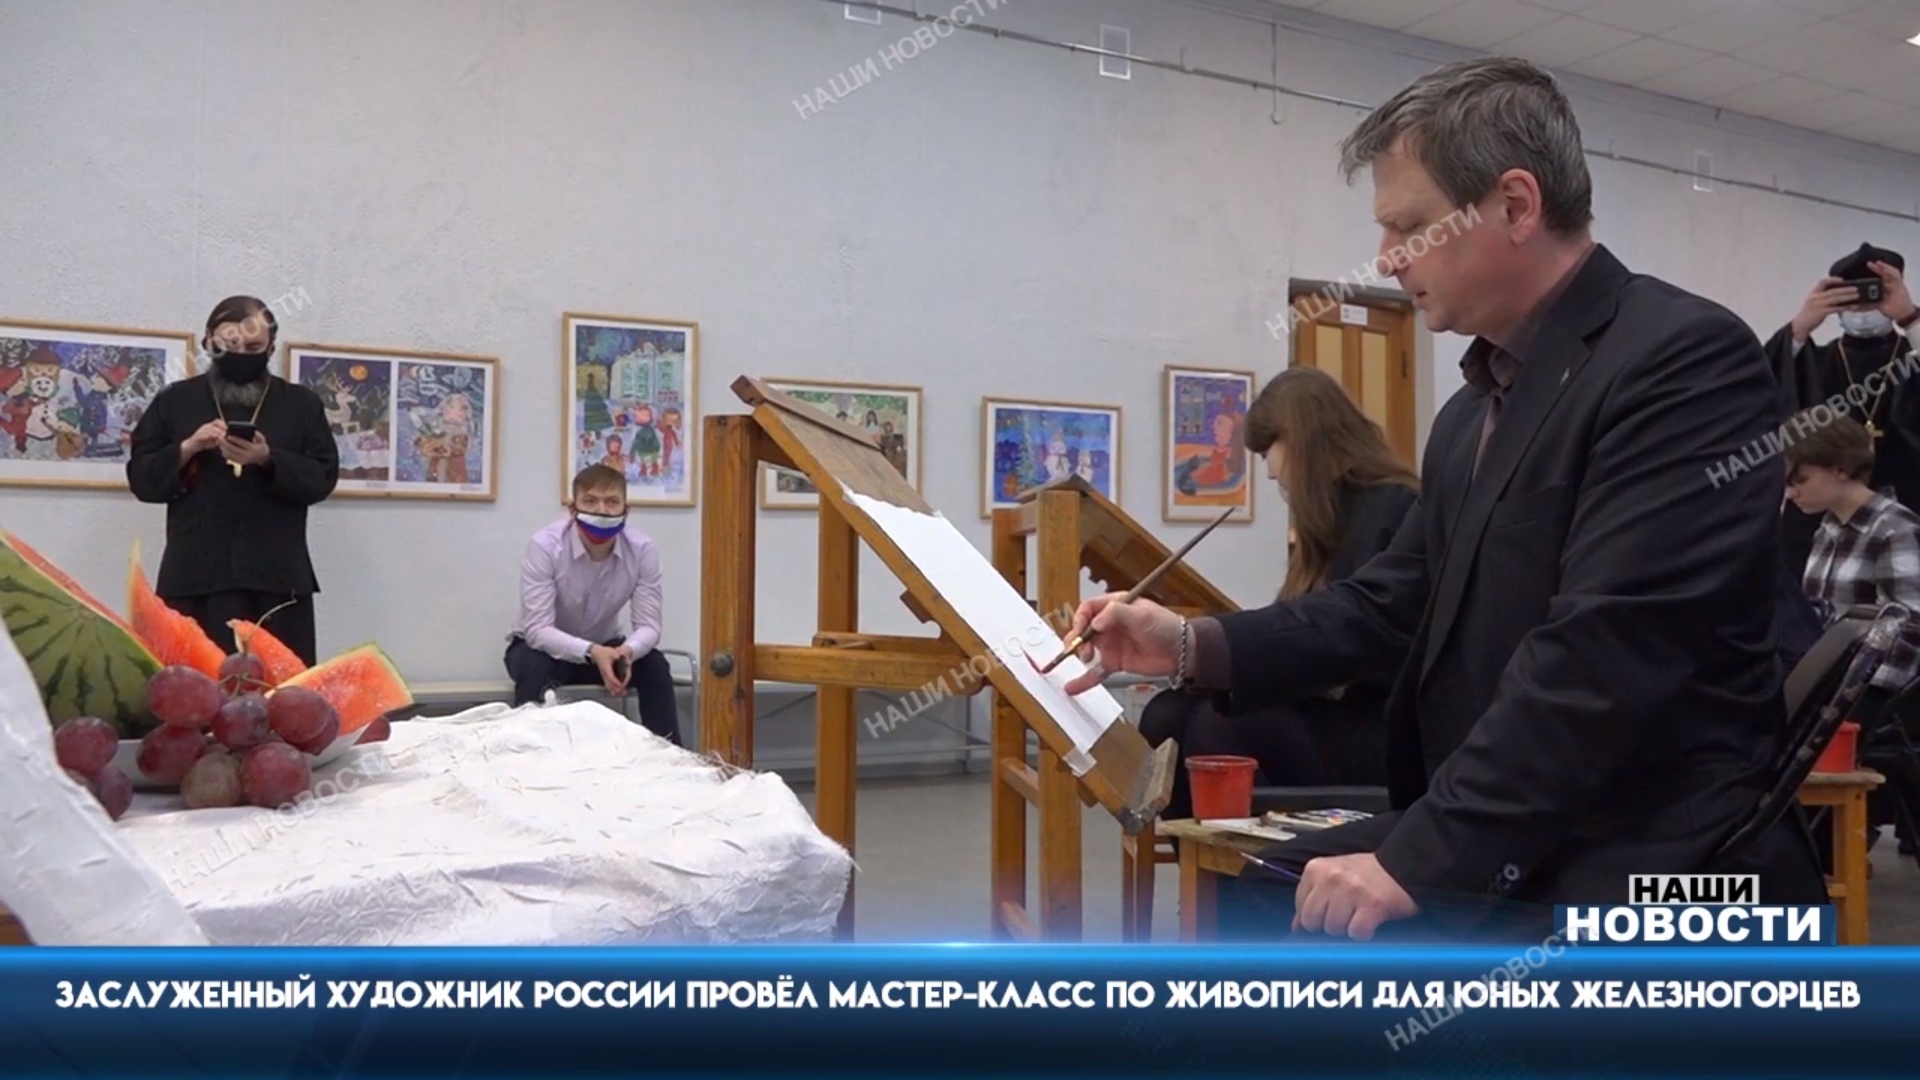 Телевидение Железногорска рассказало о мастер-классе по акварели от гостей из Московской епархии